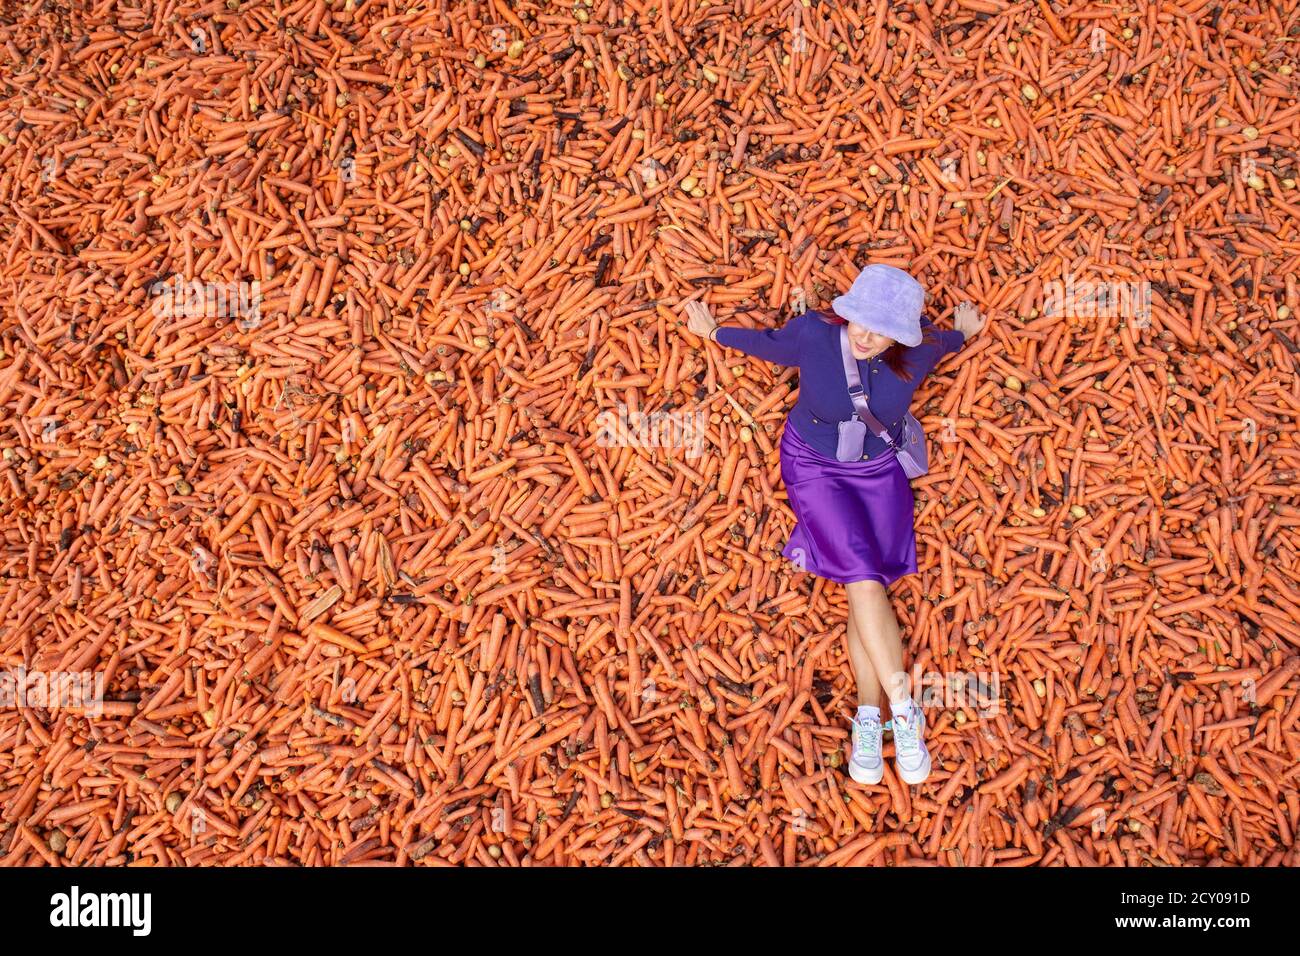 Lo studente Lauren Gallagher con l'installazione artistica 'Grouing' di Rafael Perez Evans, che è composto da 29 tonnellate di carote indesiderate al di là dell'edificio ben Pimlott presso il Goldsmiths College di Londra. Foto Stock